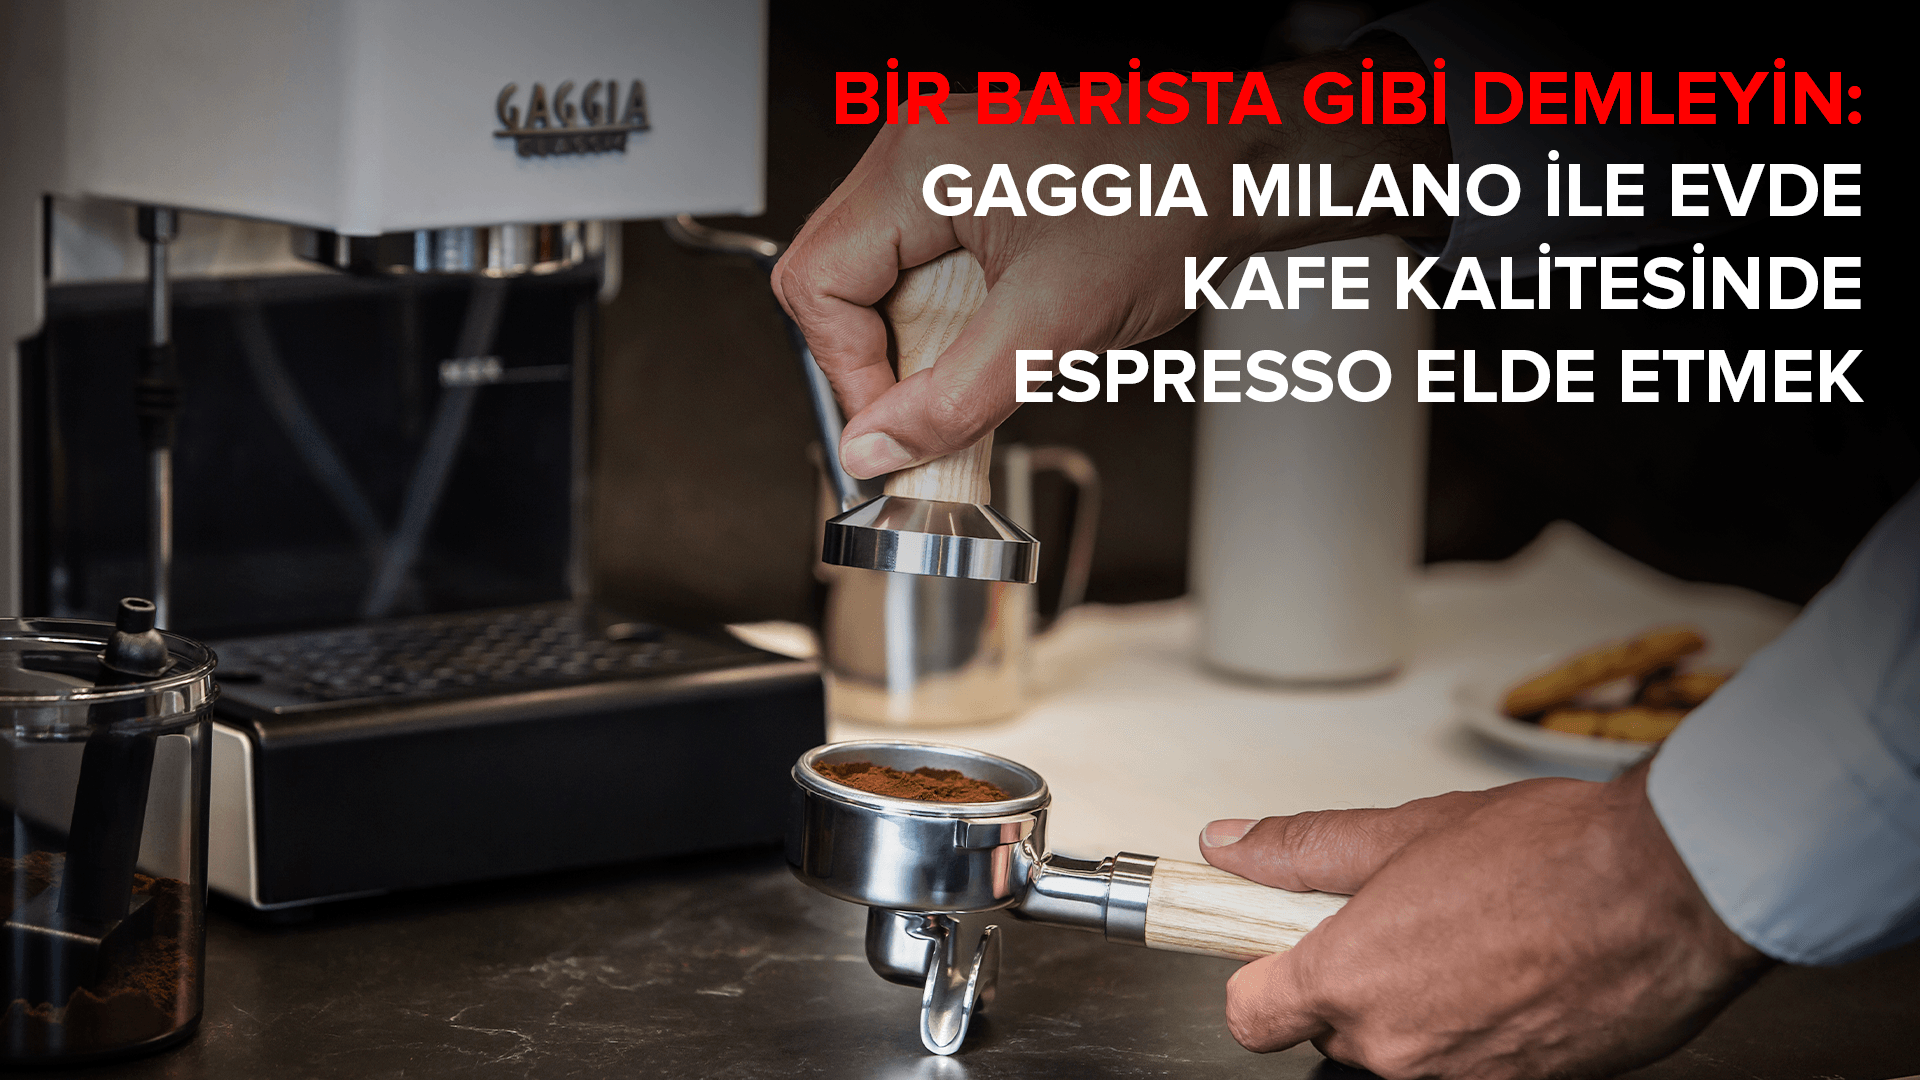 Bir Barista Gibi Demleyin: Gaggia Milano ile Evde Kafe Kalitesinde Espresso Elde Etmek